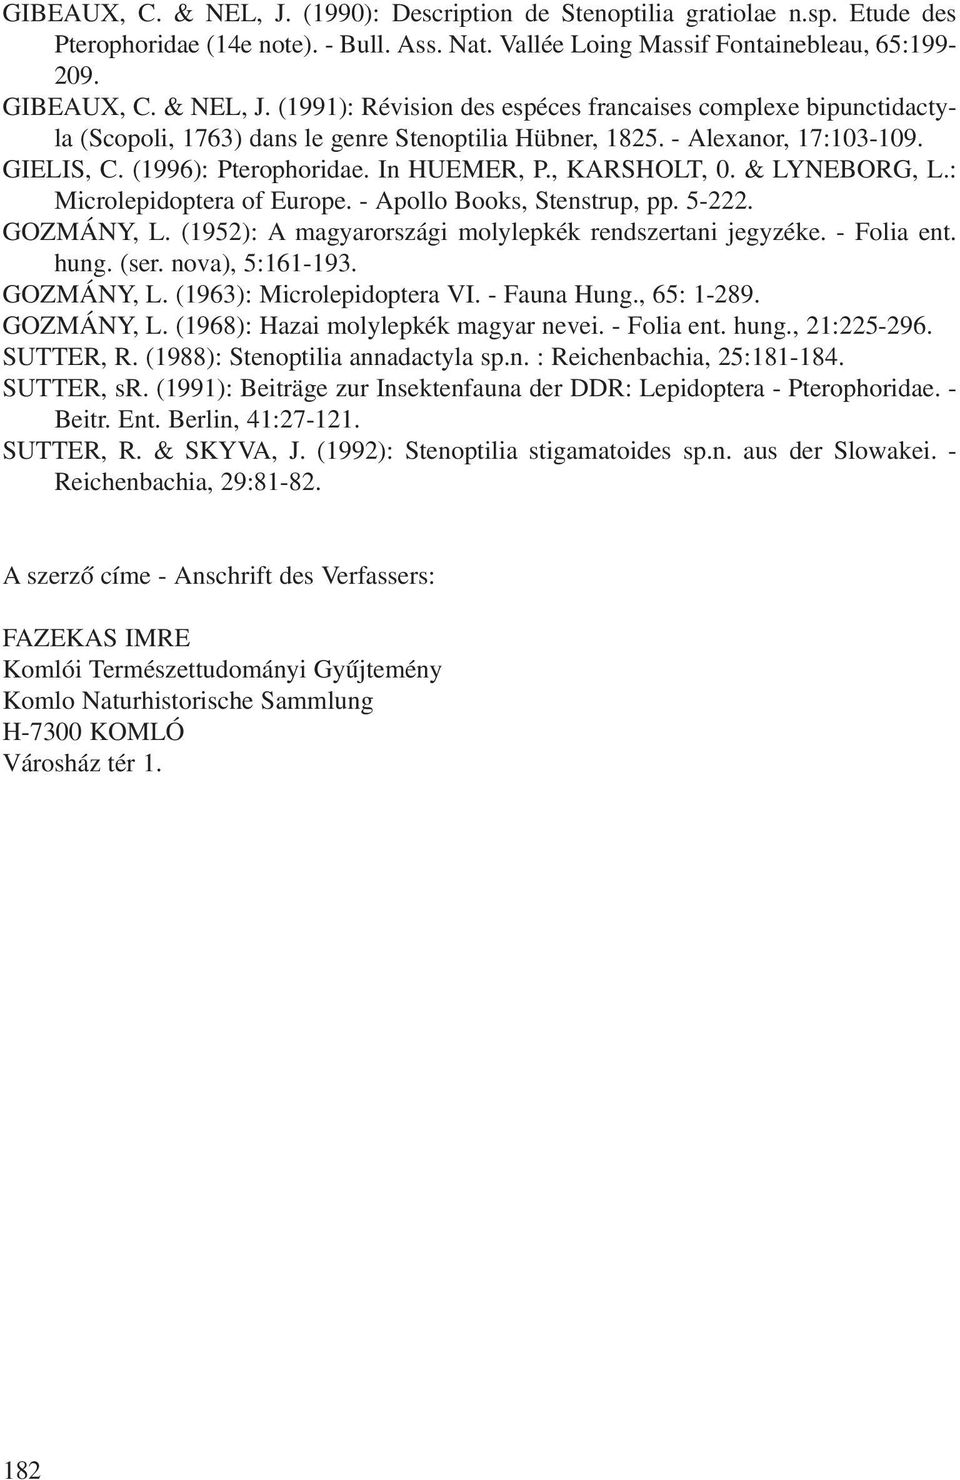 (1952): A magyarországi molylepkék rendszertani jegyzéke. - Folia ent. hung. (ser. nova), 5:161-193. GOZMÁNY, L. (1963): Microlepidoptera VI. - Fauna Hung., 65: 1-289. GOZMÁNY, L. (1968): Hazai molylepkék magyar nevei.